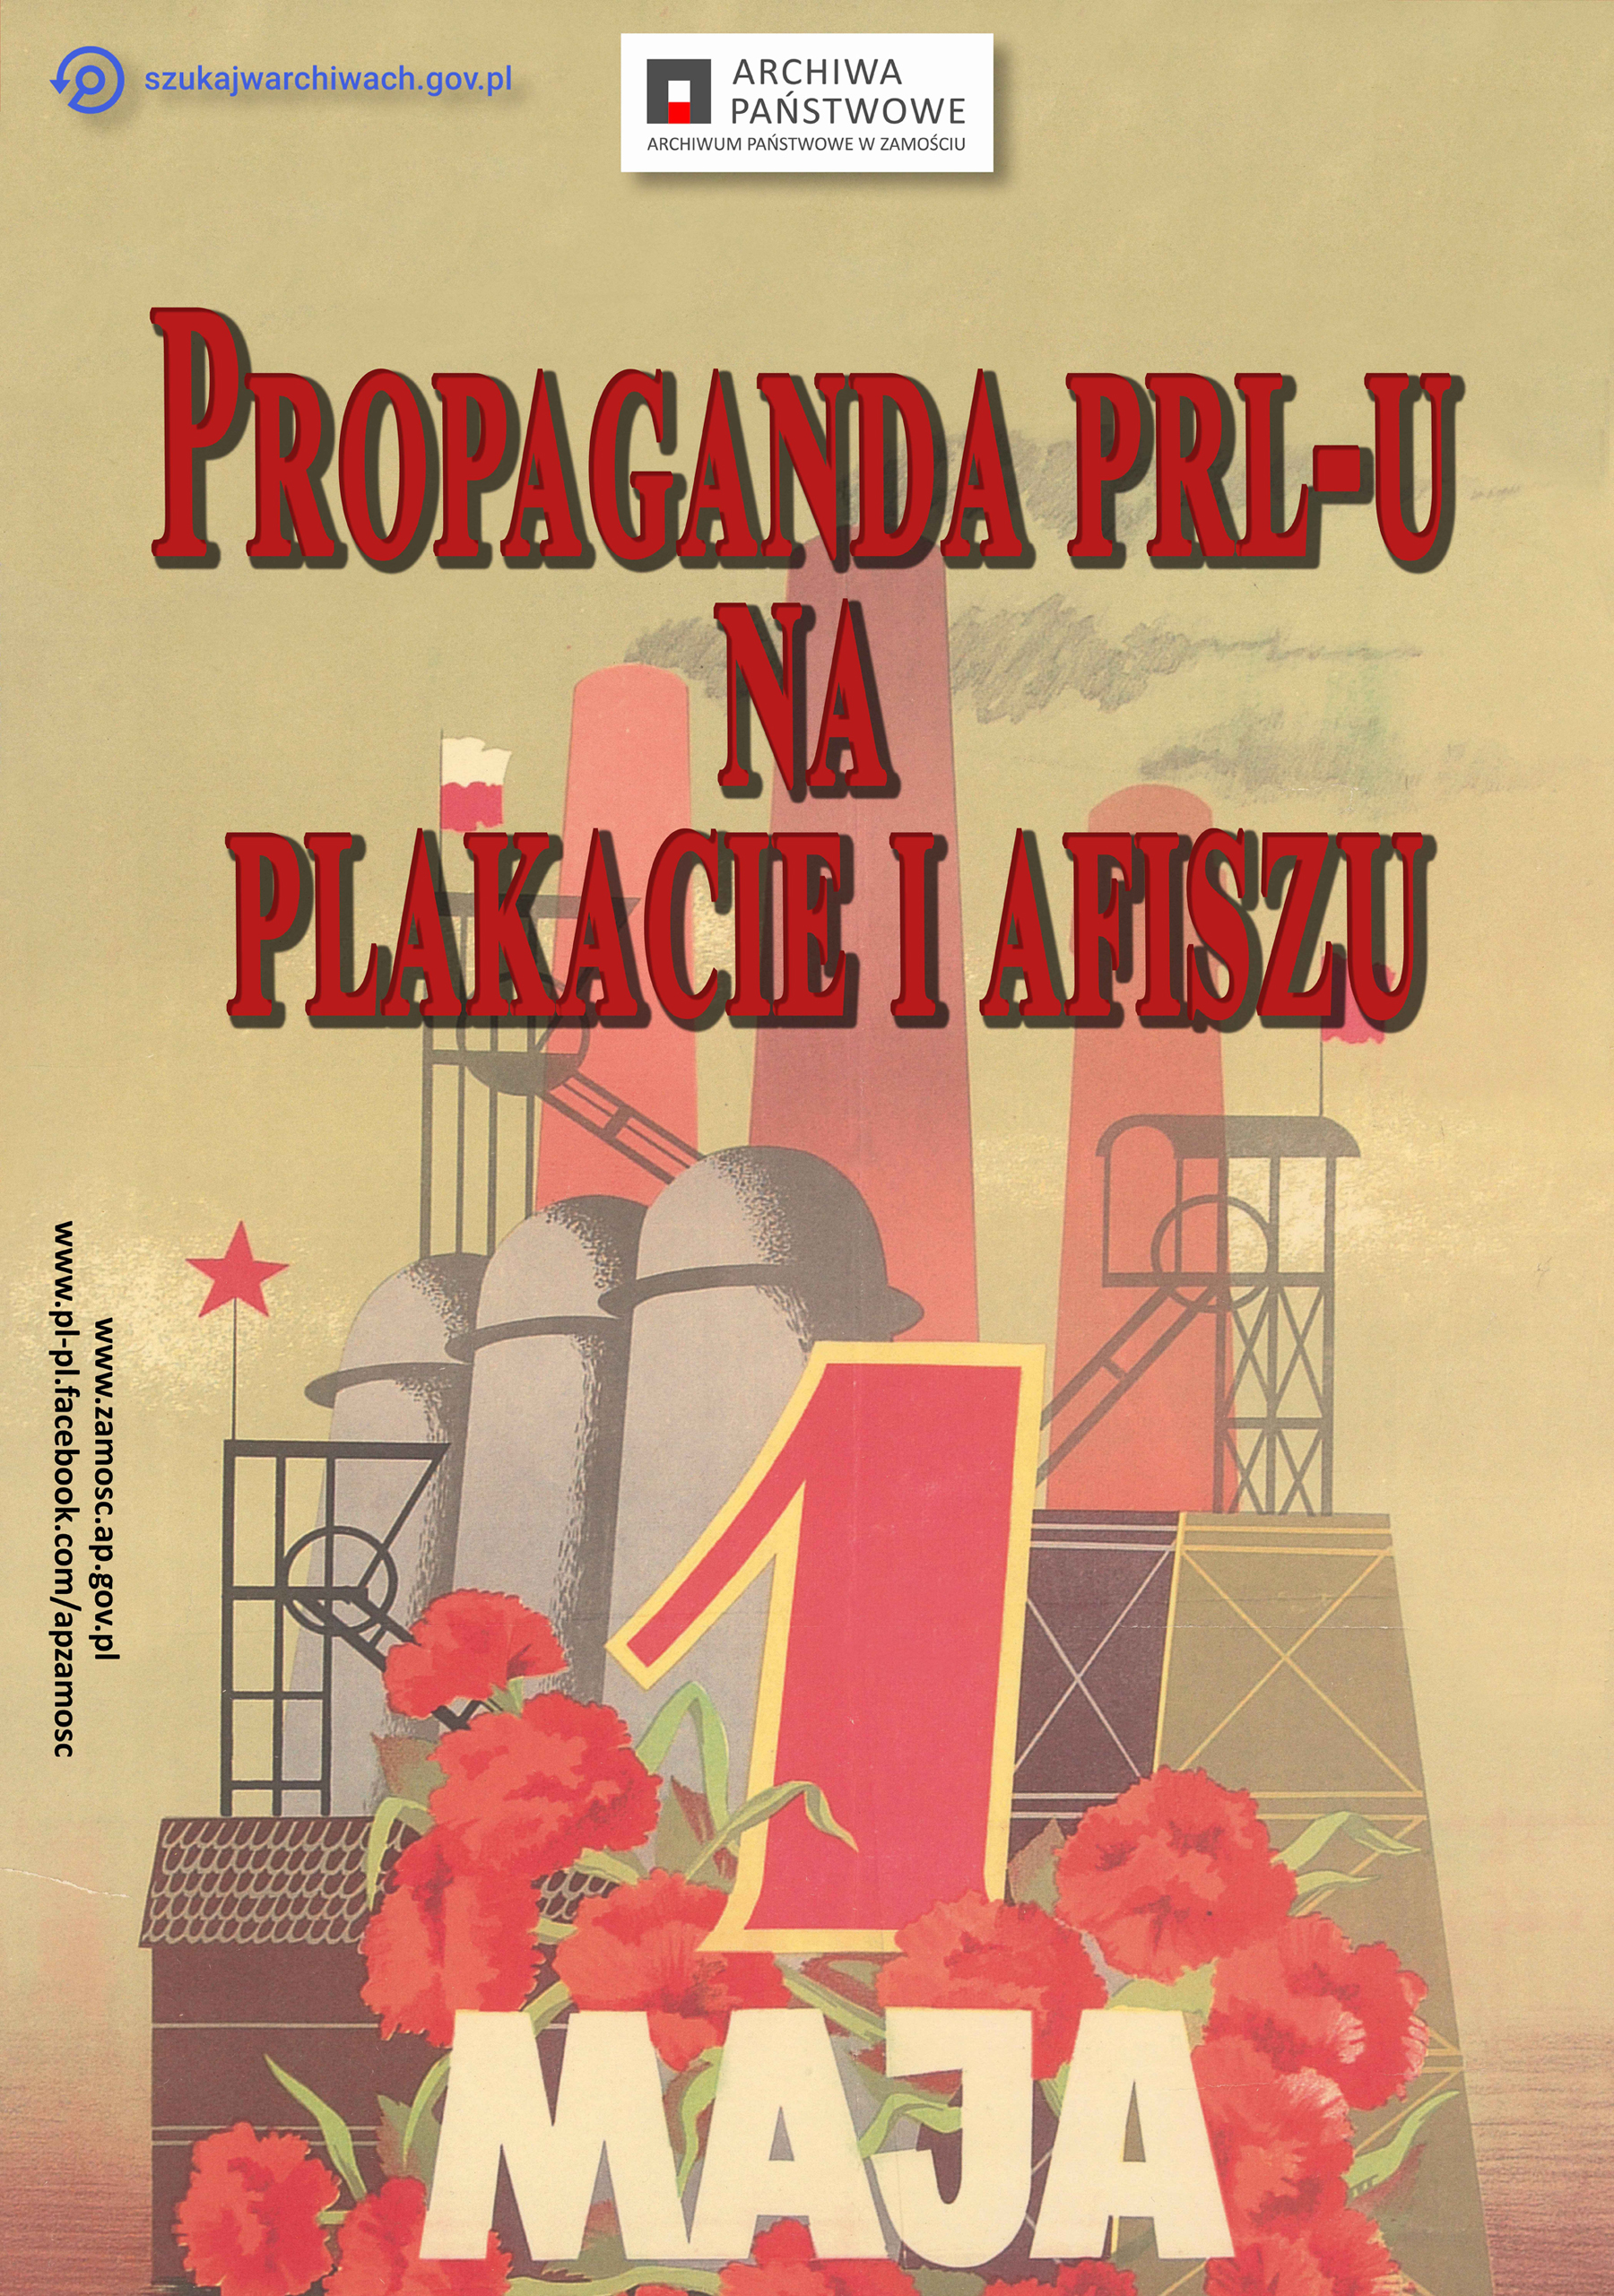 Plakat z tytułem wystawy